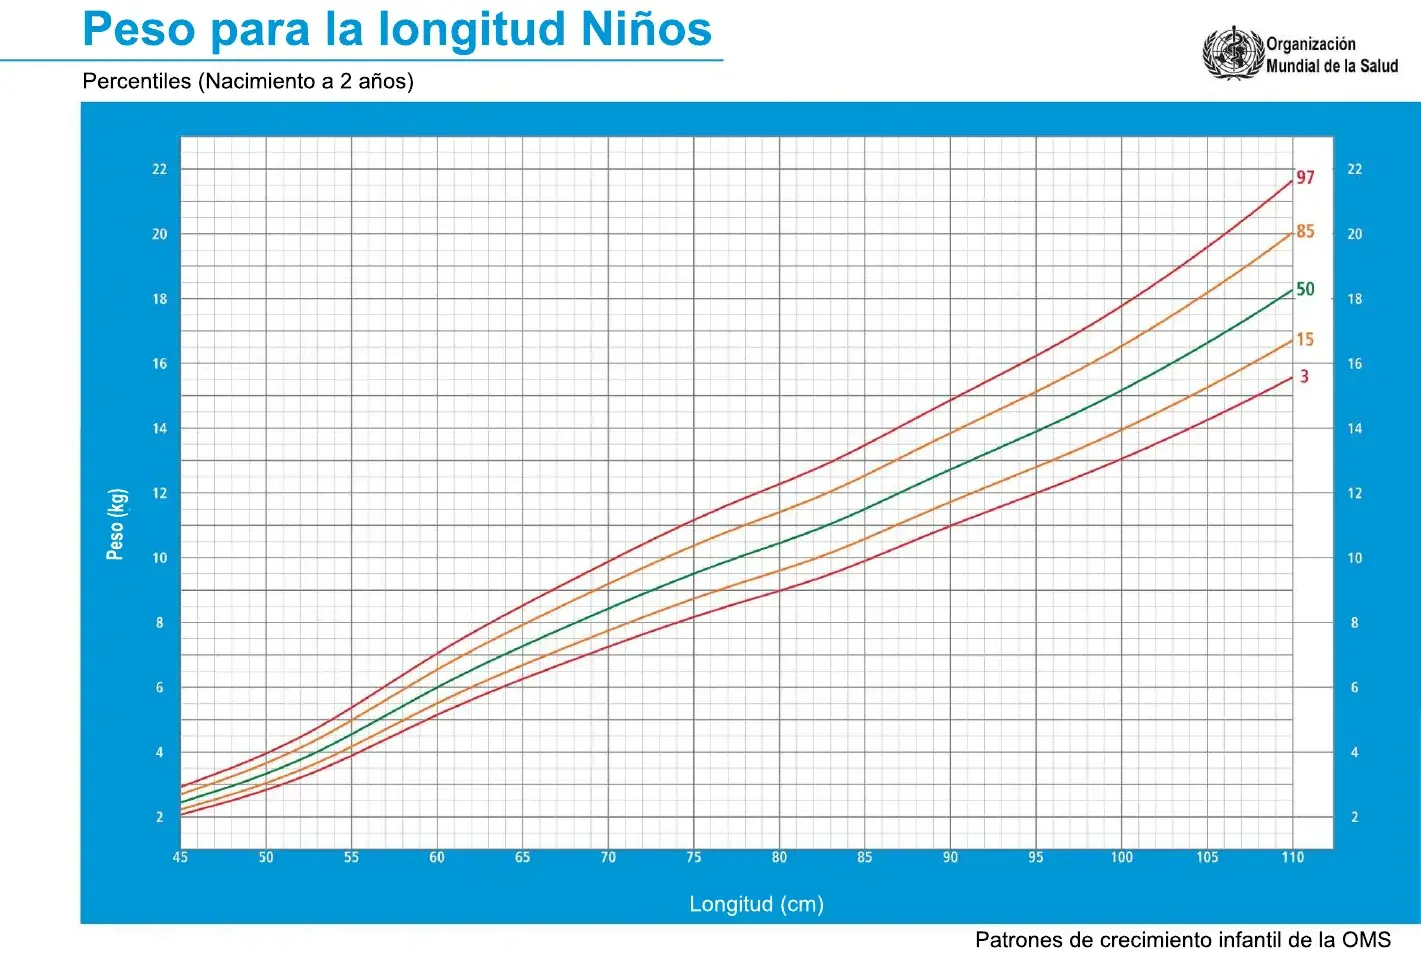 Grafica que muestra los percentiles de crecimiento comparando el peso con la longitud de los niños bebés del nacimiento a los dos años de edad